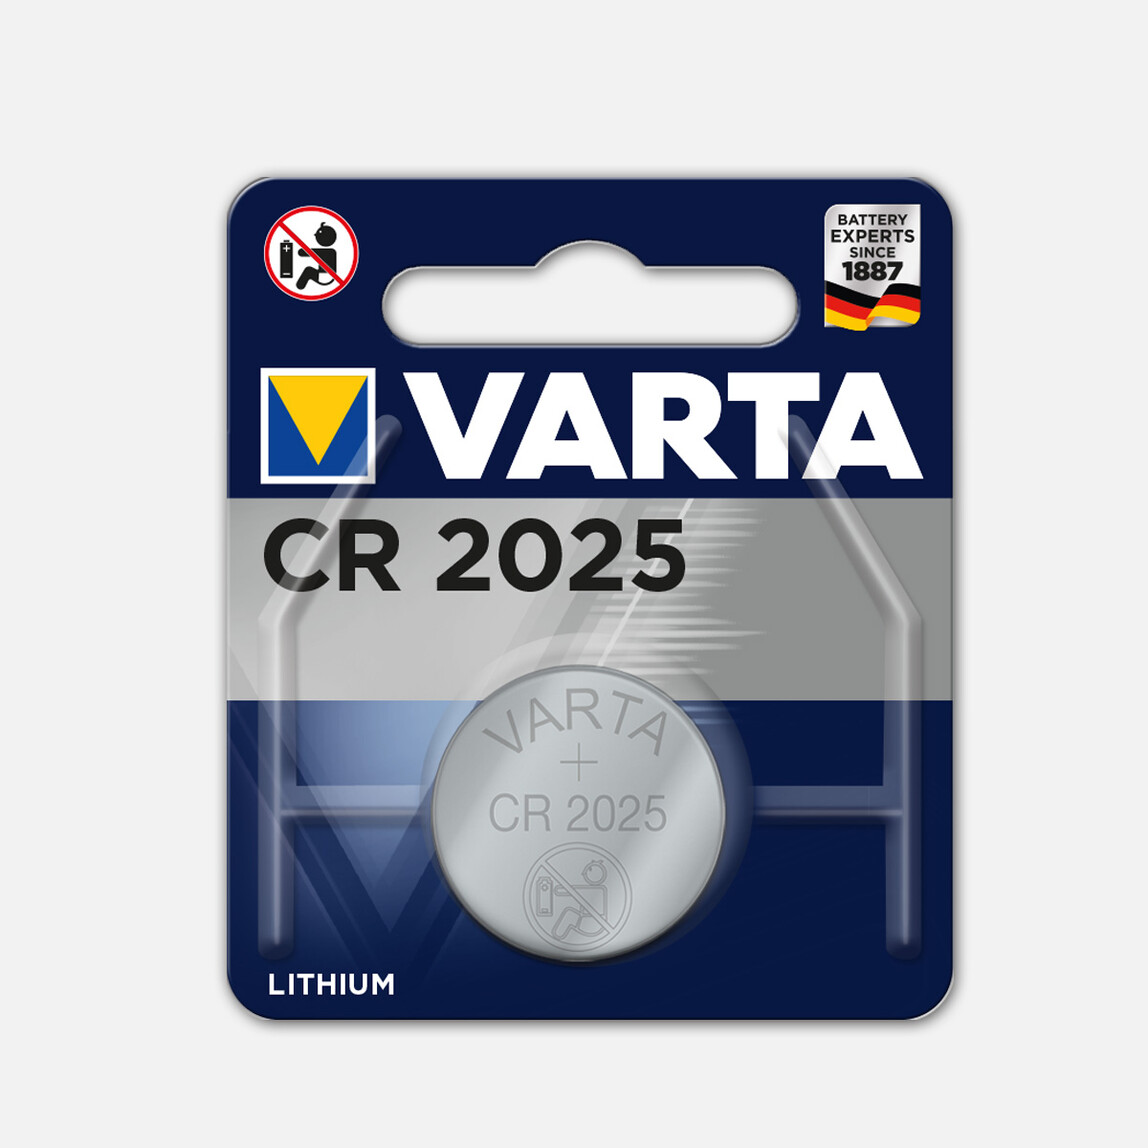    Varta Li Elekt Cr 2025 Pil 3V Electronic Pil  